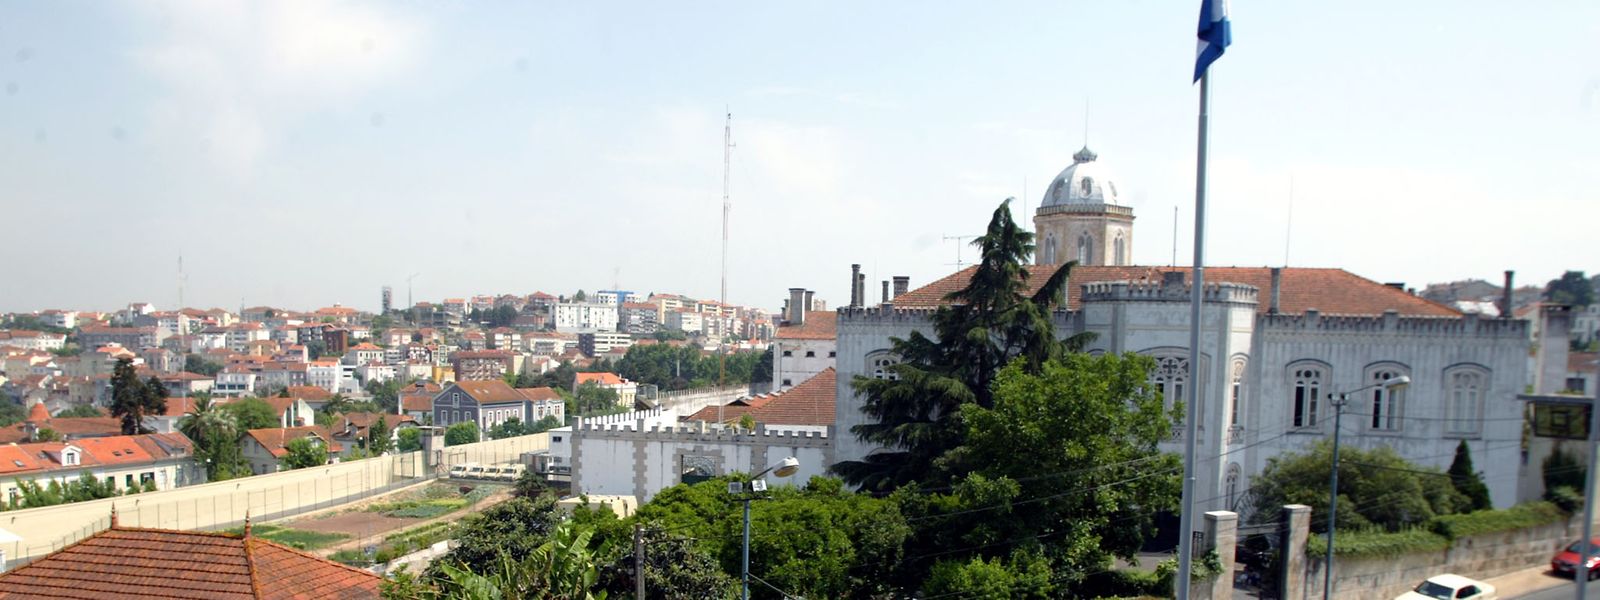 Prisão de Coimbra                                                                                                                                                                                                                                                                                                                                                                                                                                                                                                                                                                                                                  